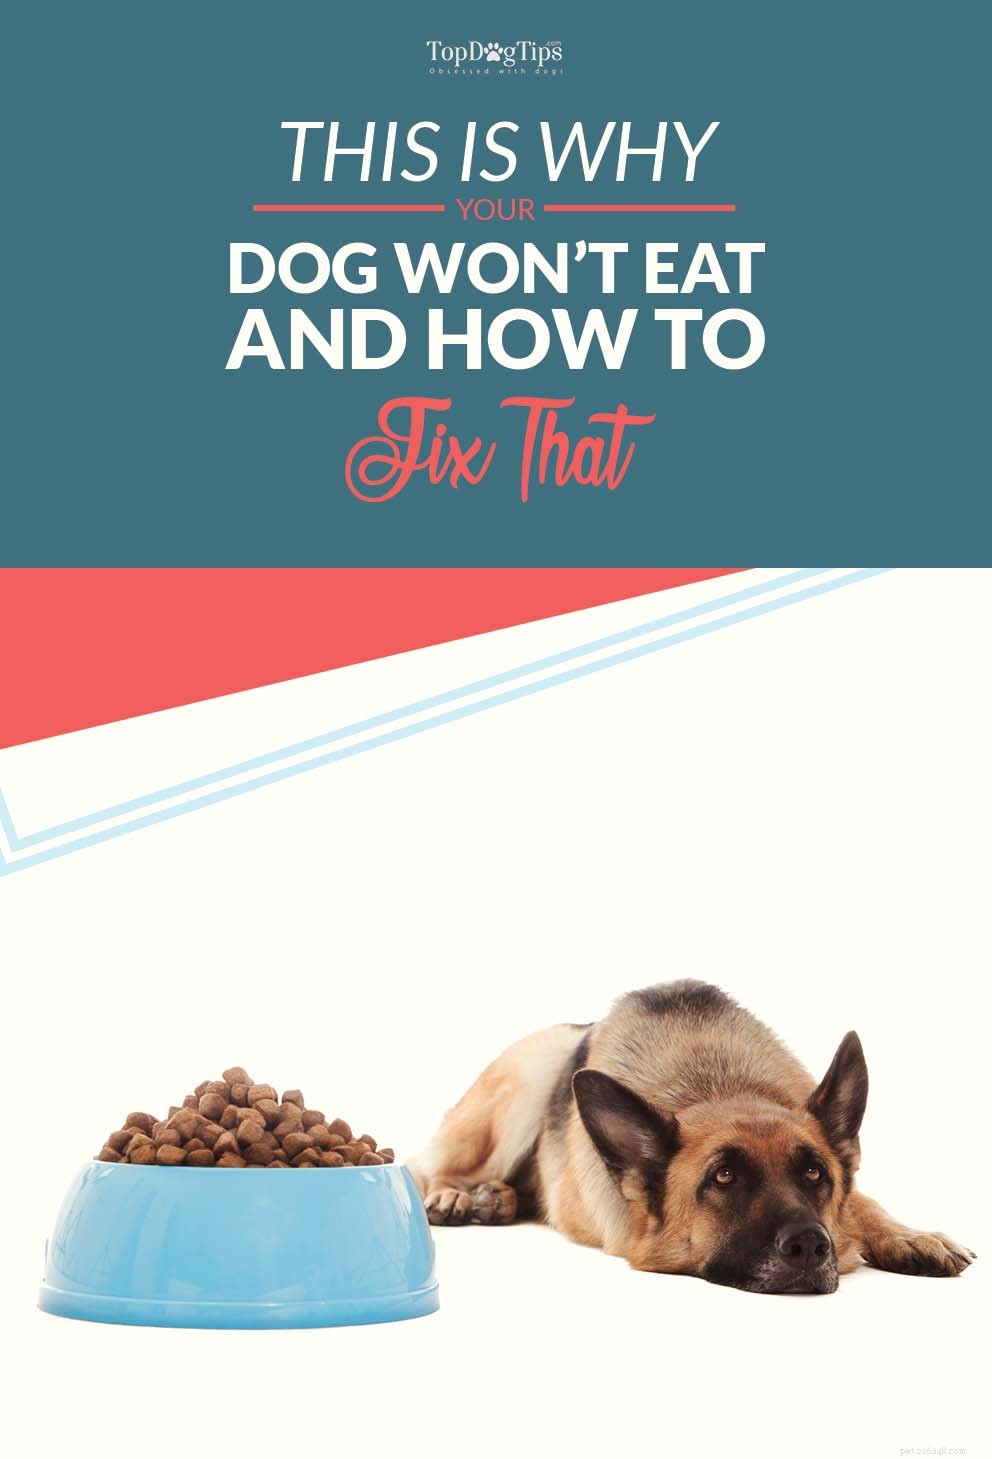 내 개는 왜 먹지 않습니까? 개가 음식을 거부하는 이유